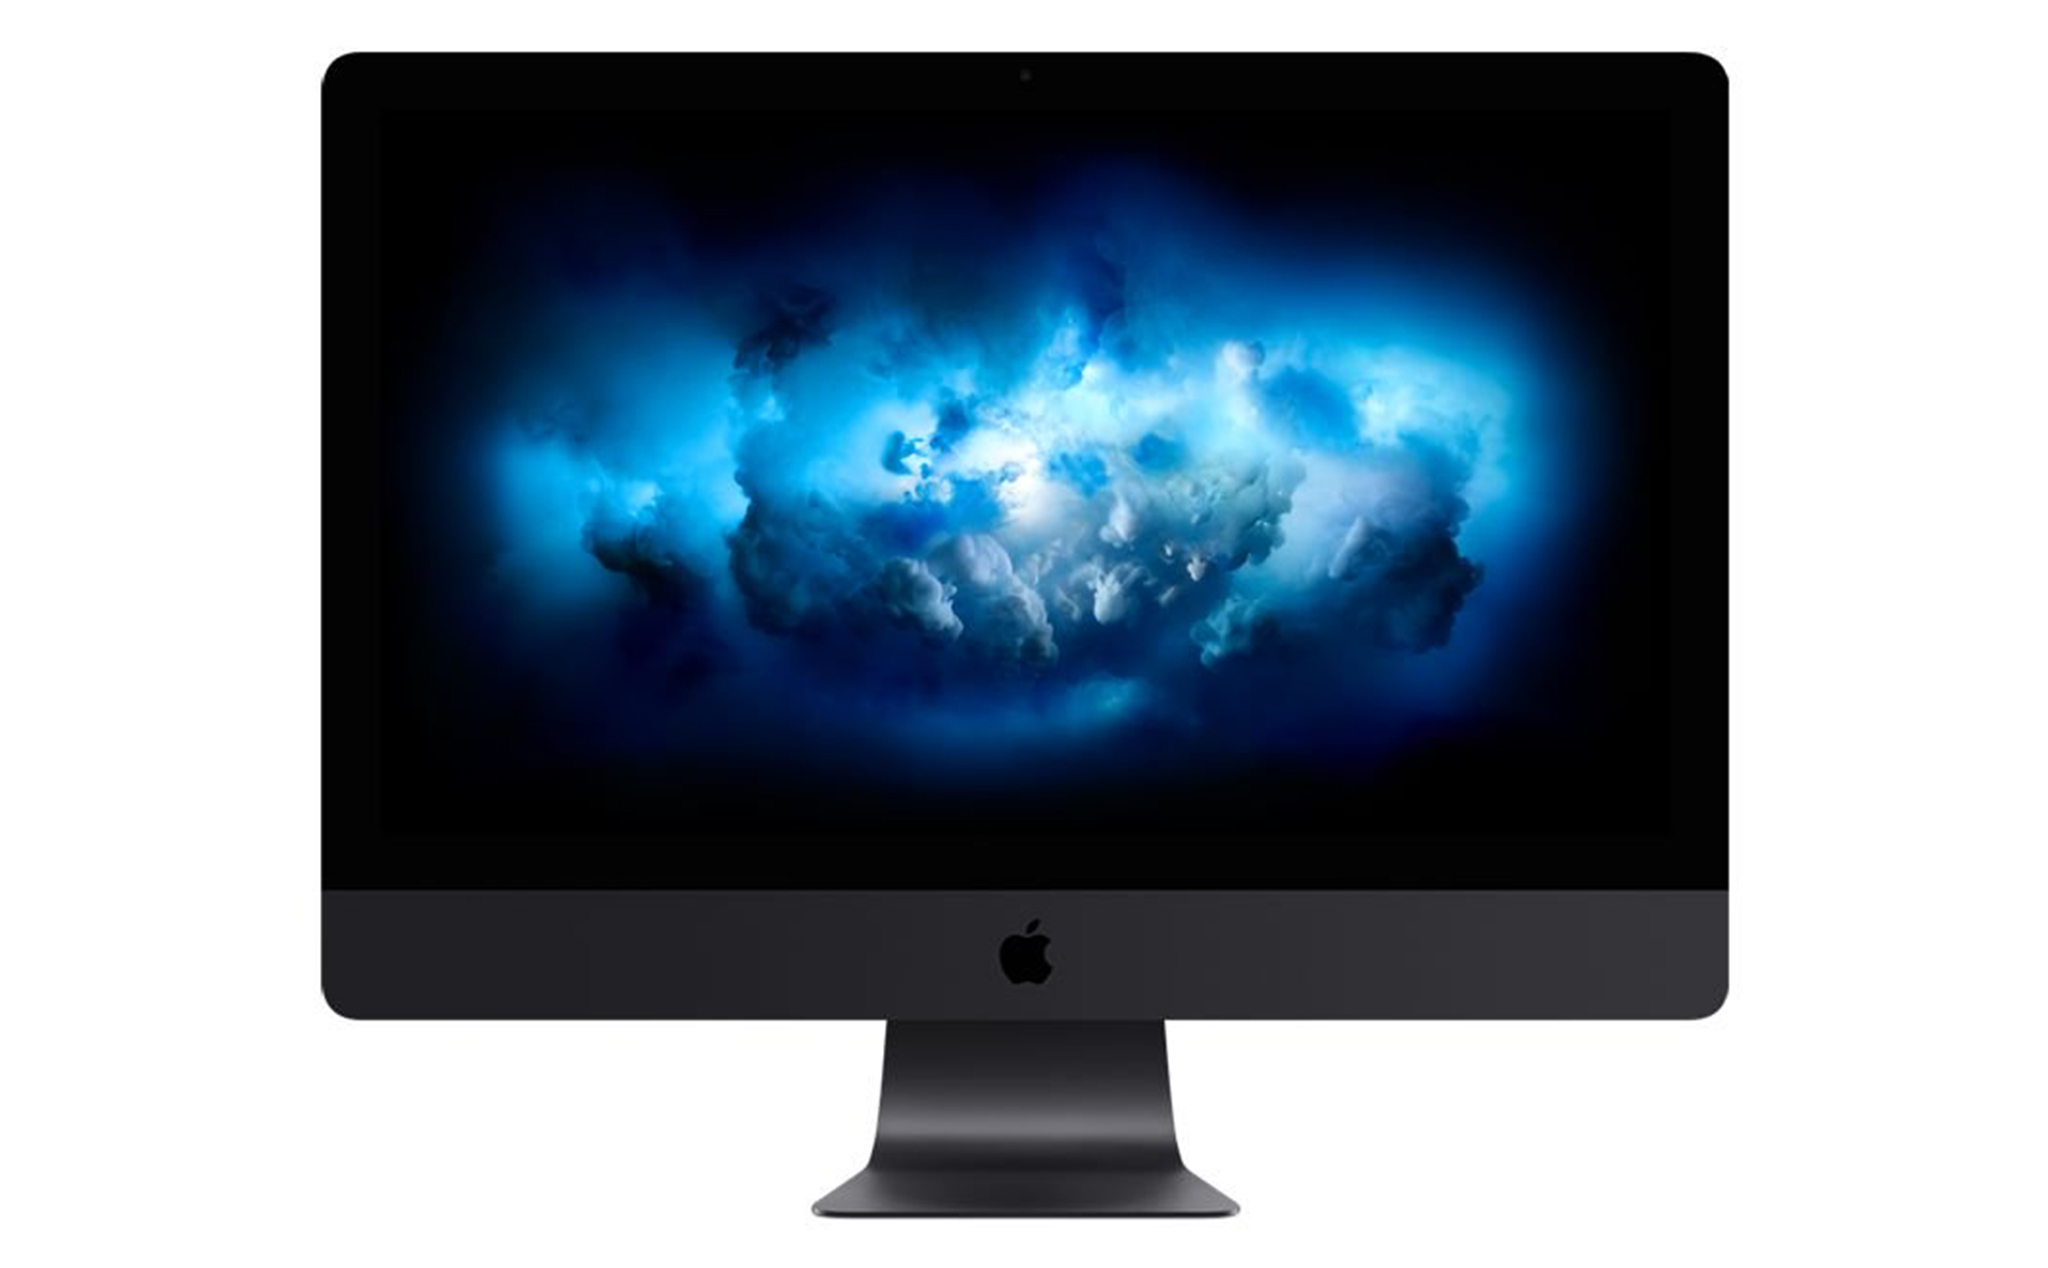 Apple nâng cấp iMac Pro lên chip Intel 10 nhân Xeon W ở bản cấu hình base, giá không đổi 4.999 USD